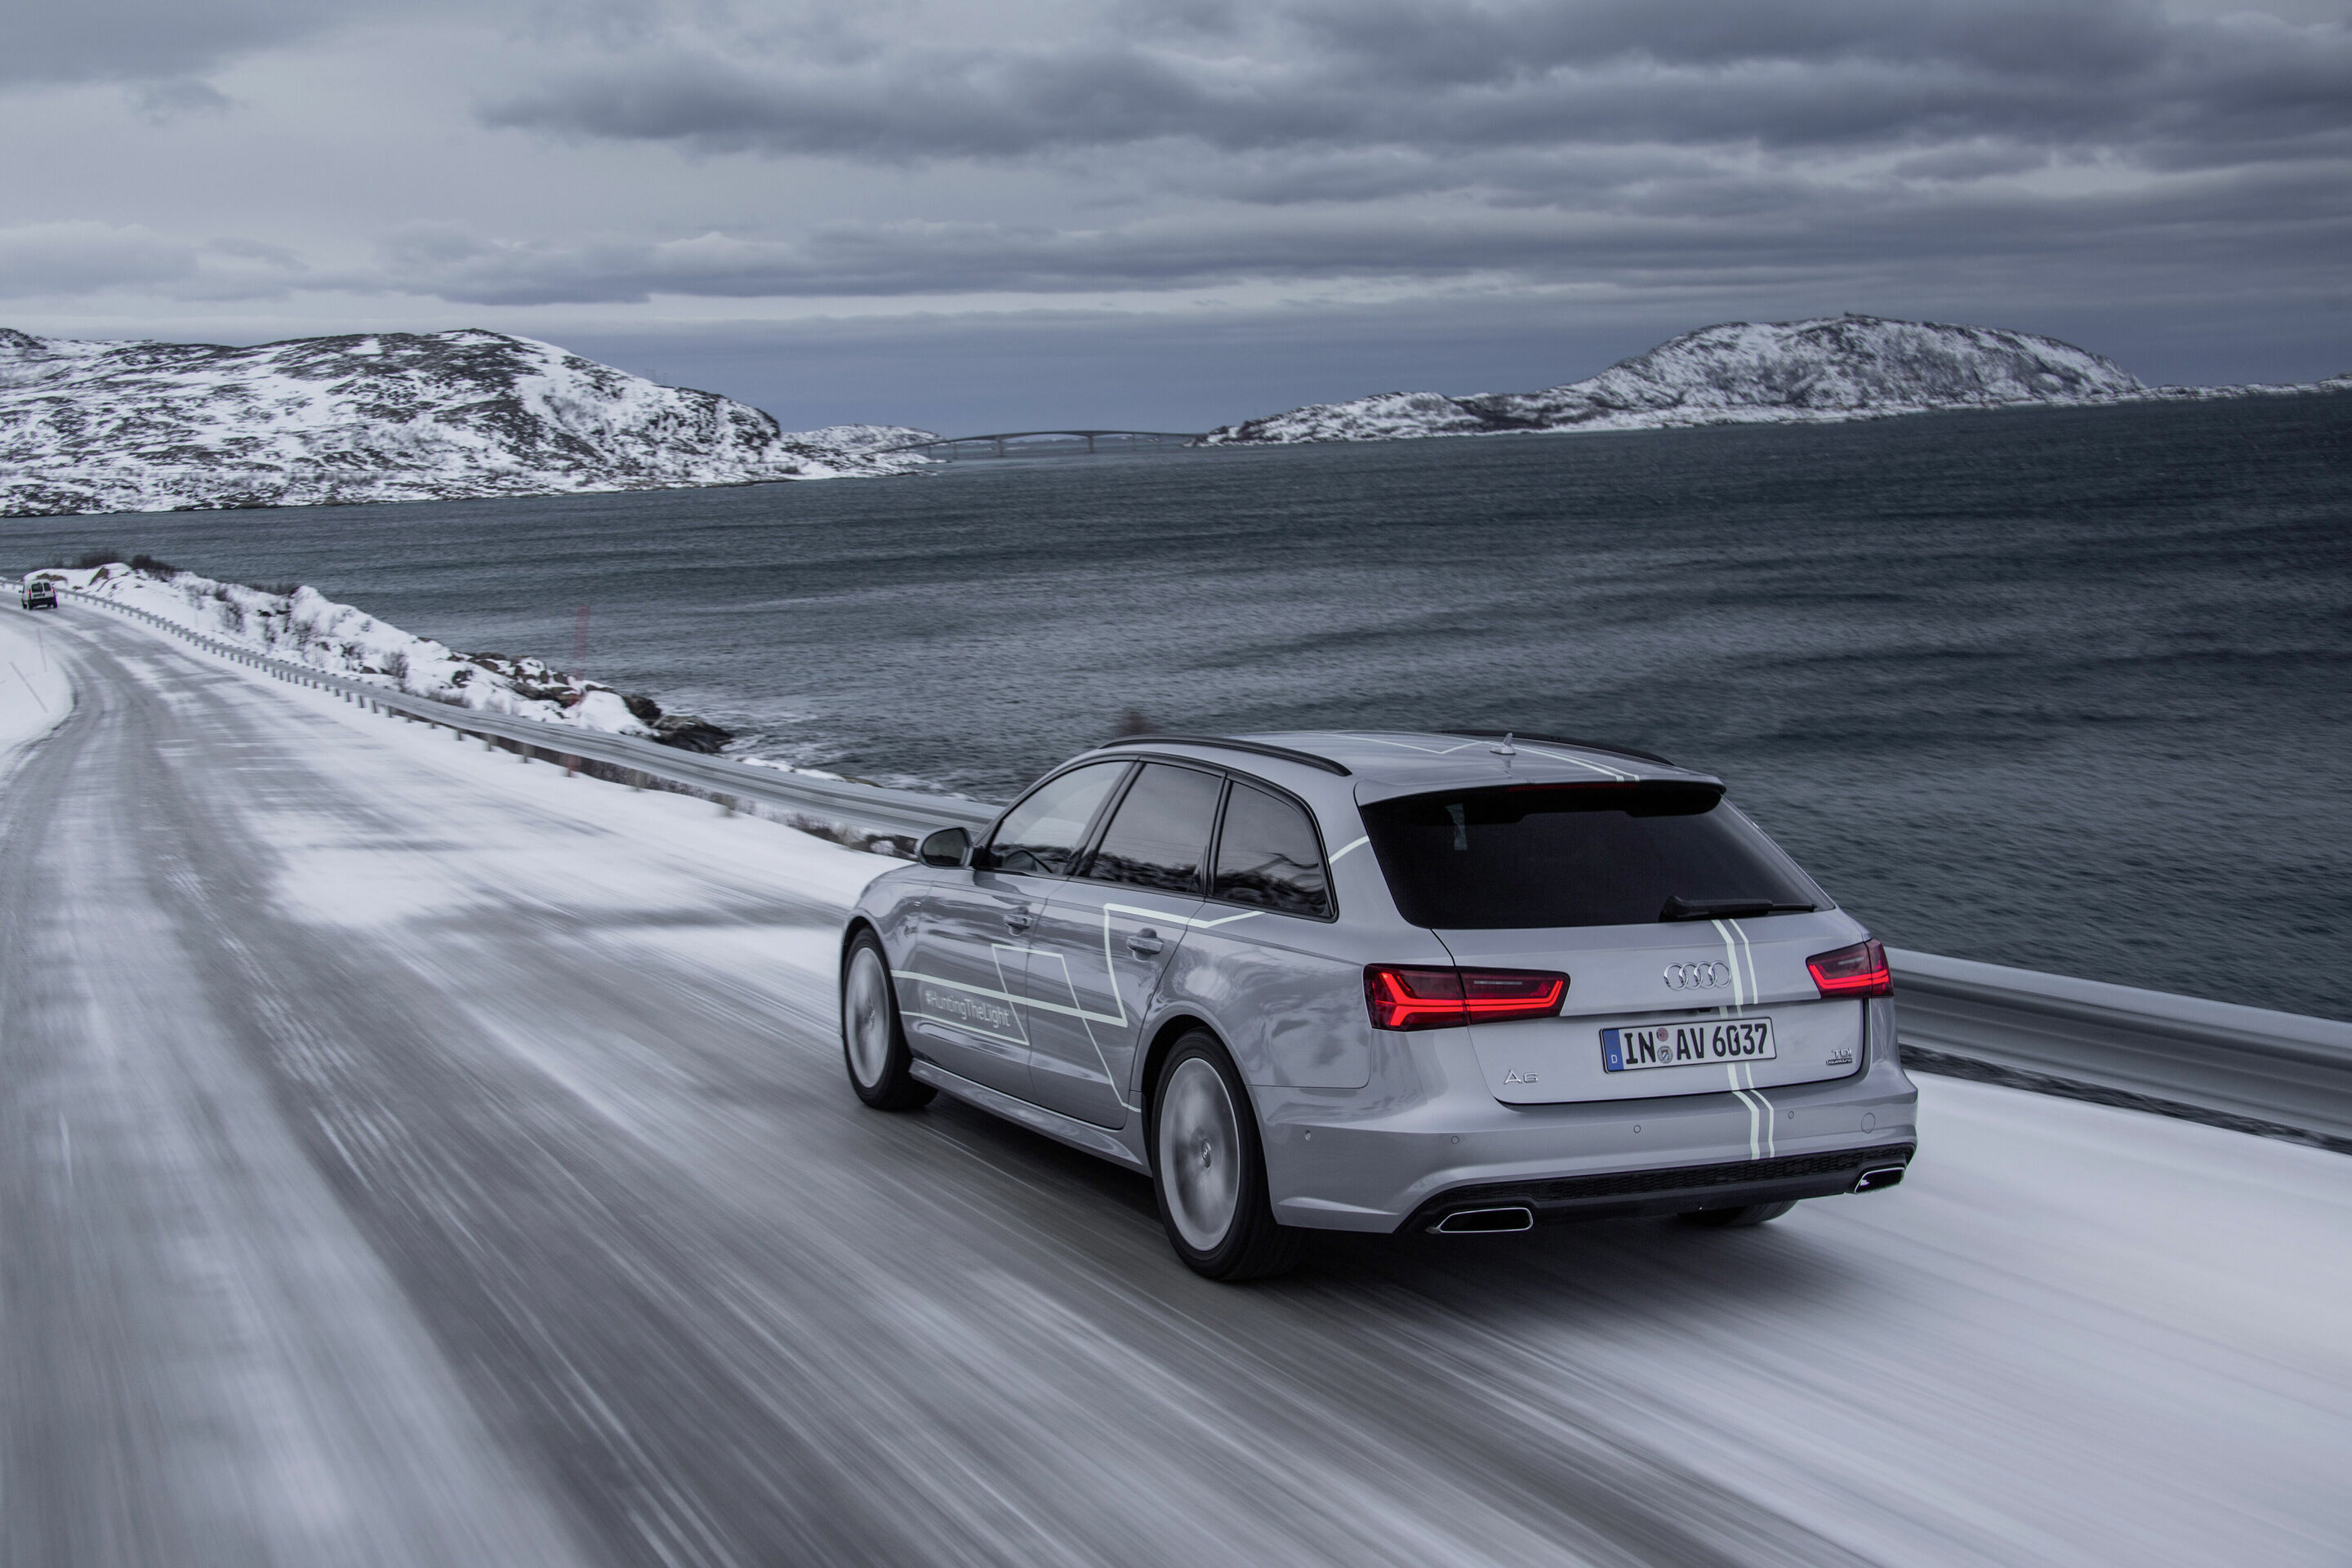 #HuntingTheLight - mit Matrix LED-Technologie im Audi A6 Avant in Nordnorwegen auf der Jagd nach dem Polarlicht.